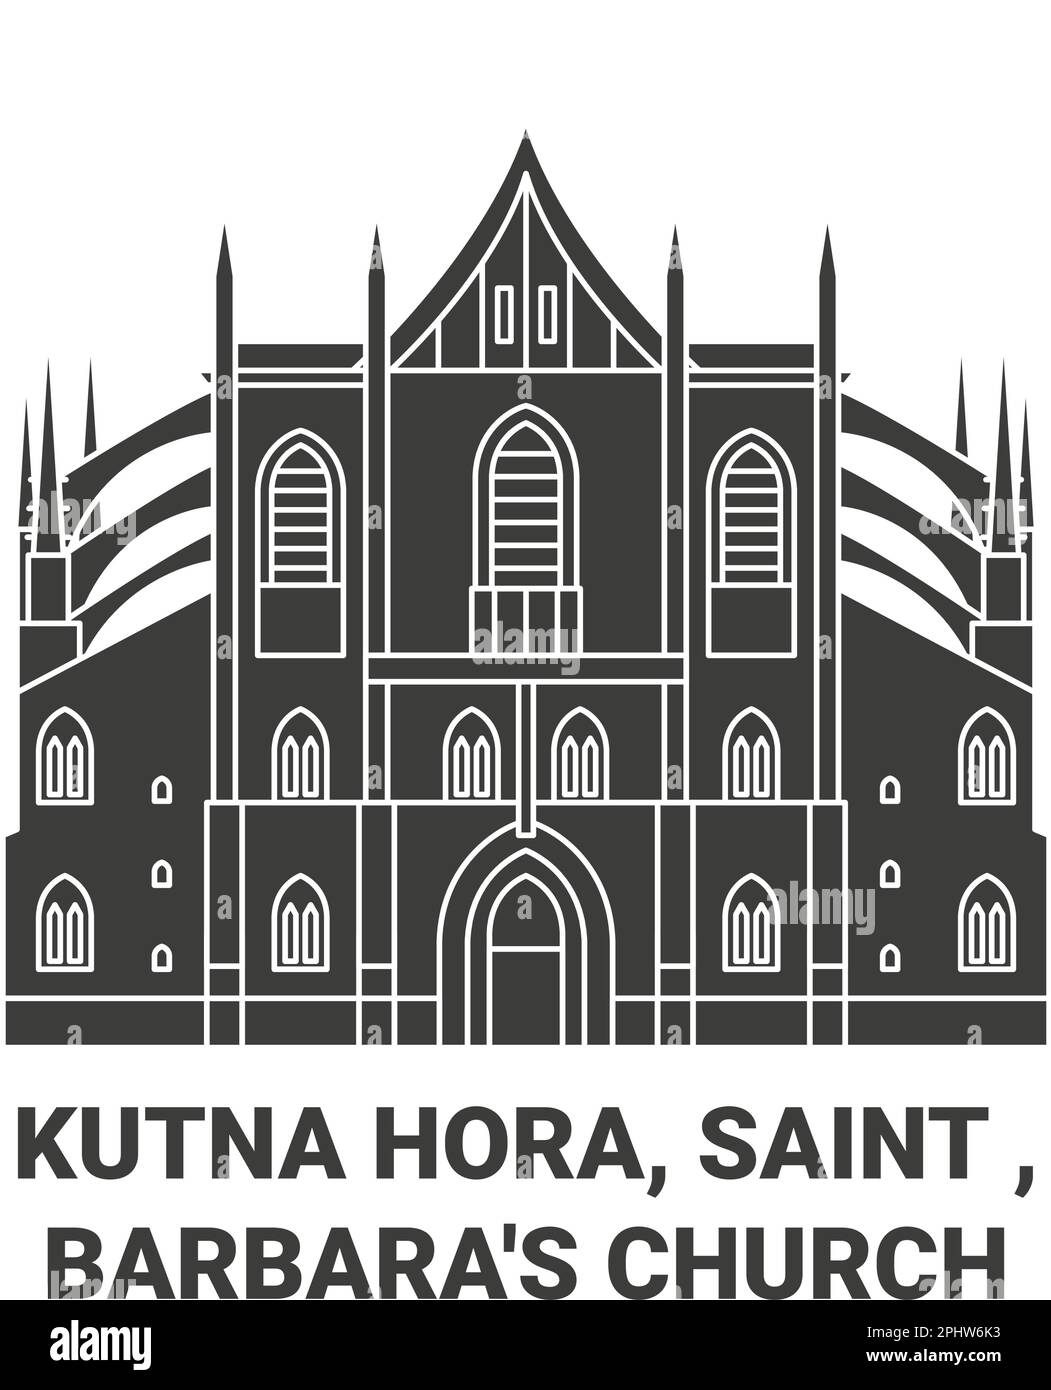 Tschechische Republik, Kutna Hora, Heilige, Barbara's Kirche Reise Wahrzeichen Vektordarstellung Stock Vektor